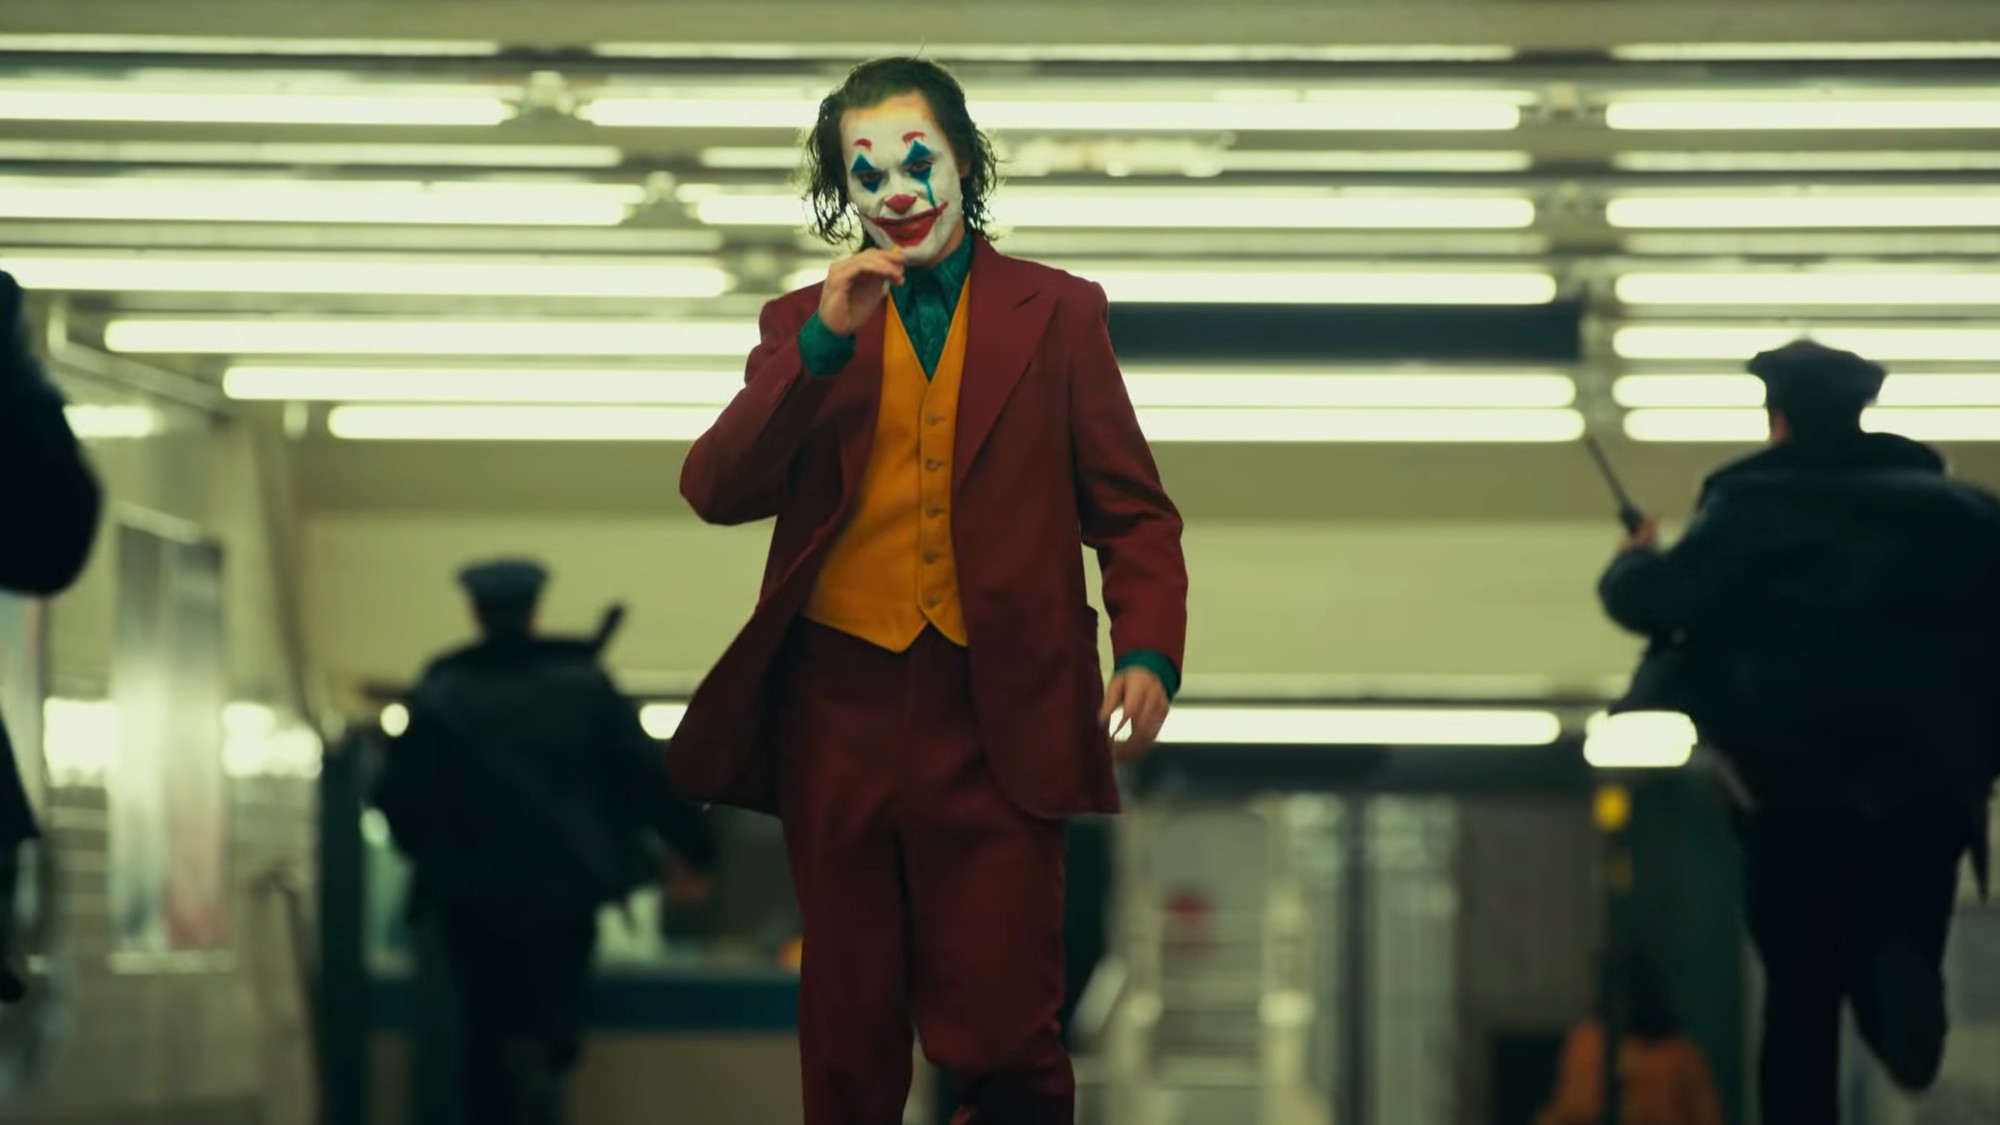 Joker giật được giải thưởng danh giá nhất tại Liên hoan phim Venice, tạo bàn đạp tham gia tranh giải Oscar